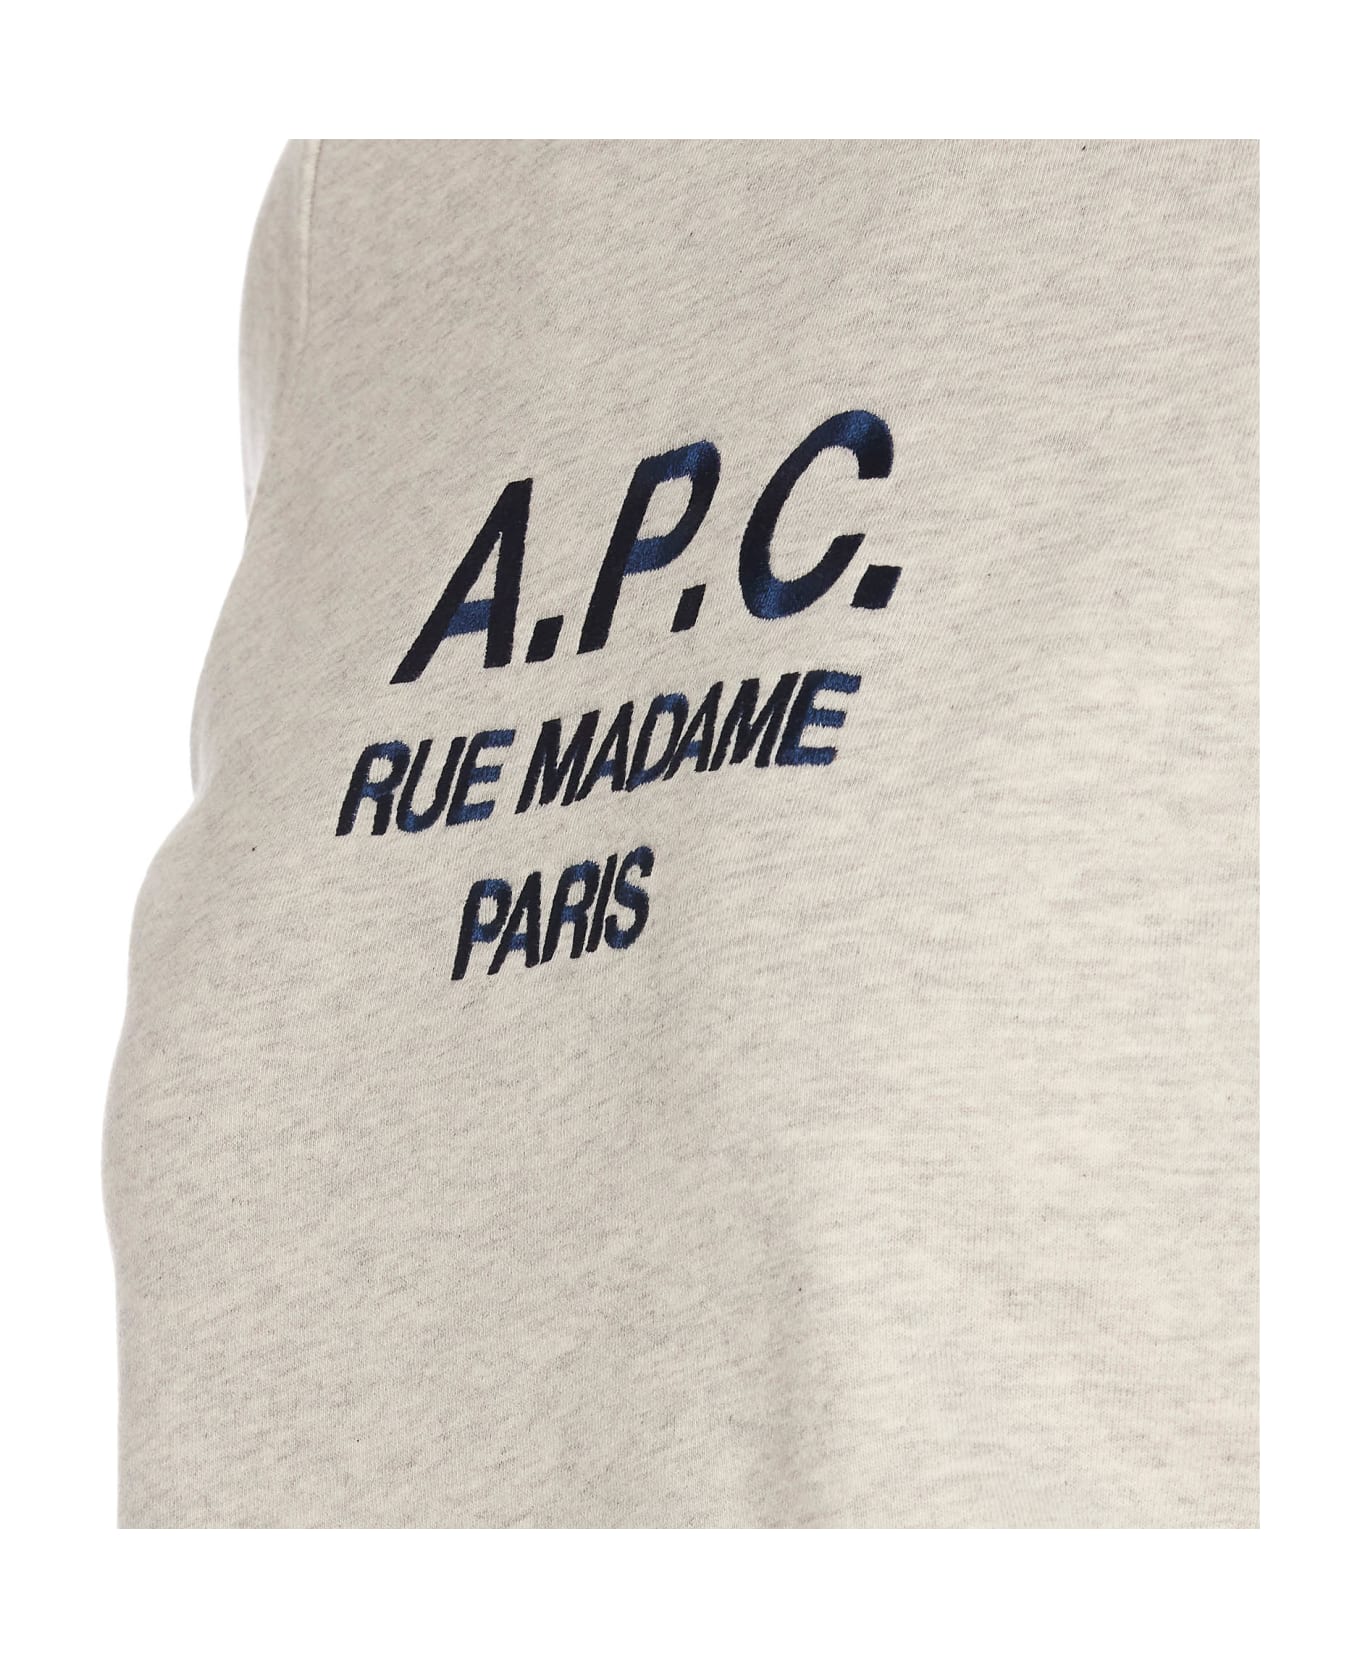 A.P.C. Tina Logo Sweatshirt - Grey